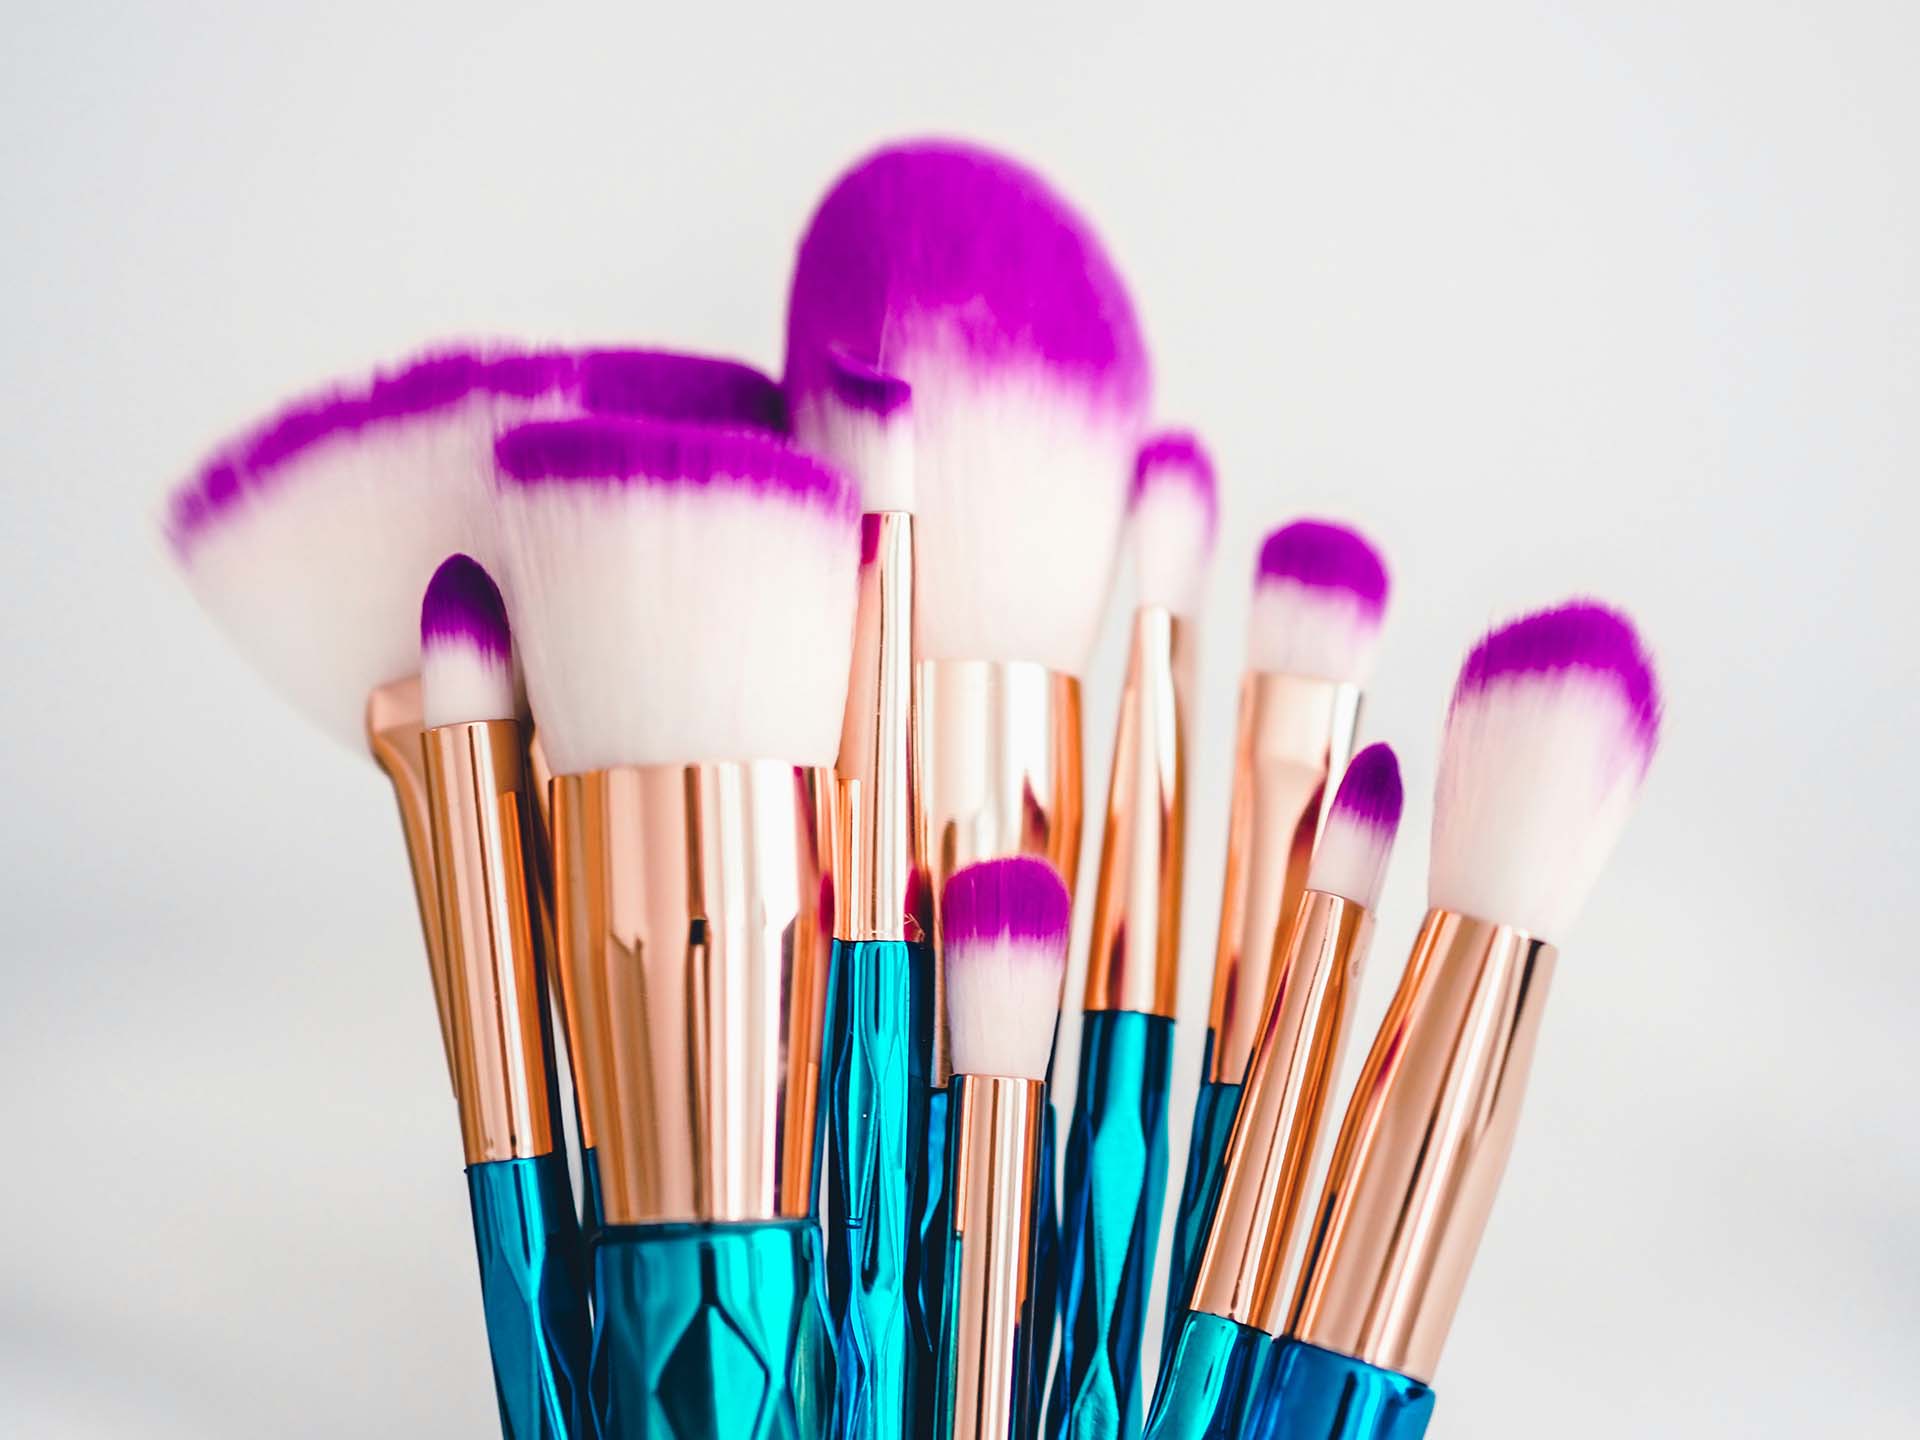 A close-up of makeup brushes